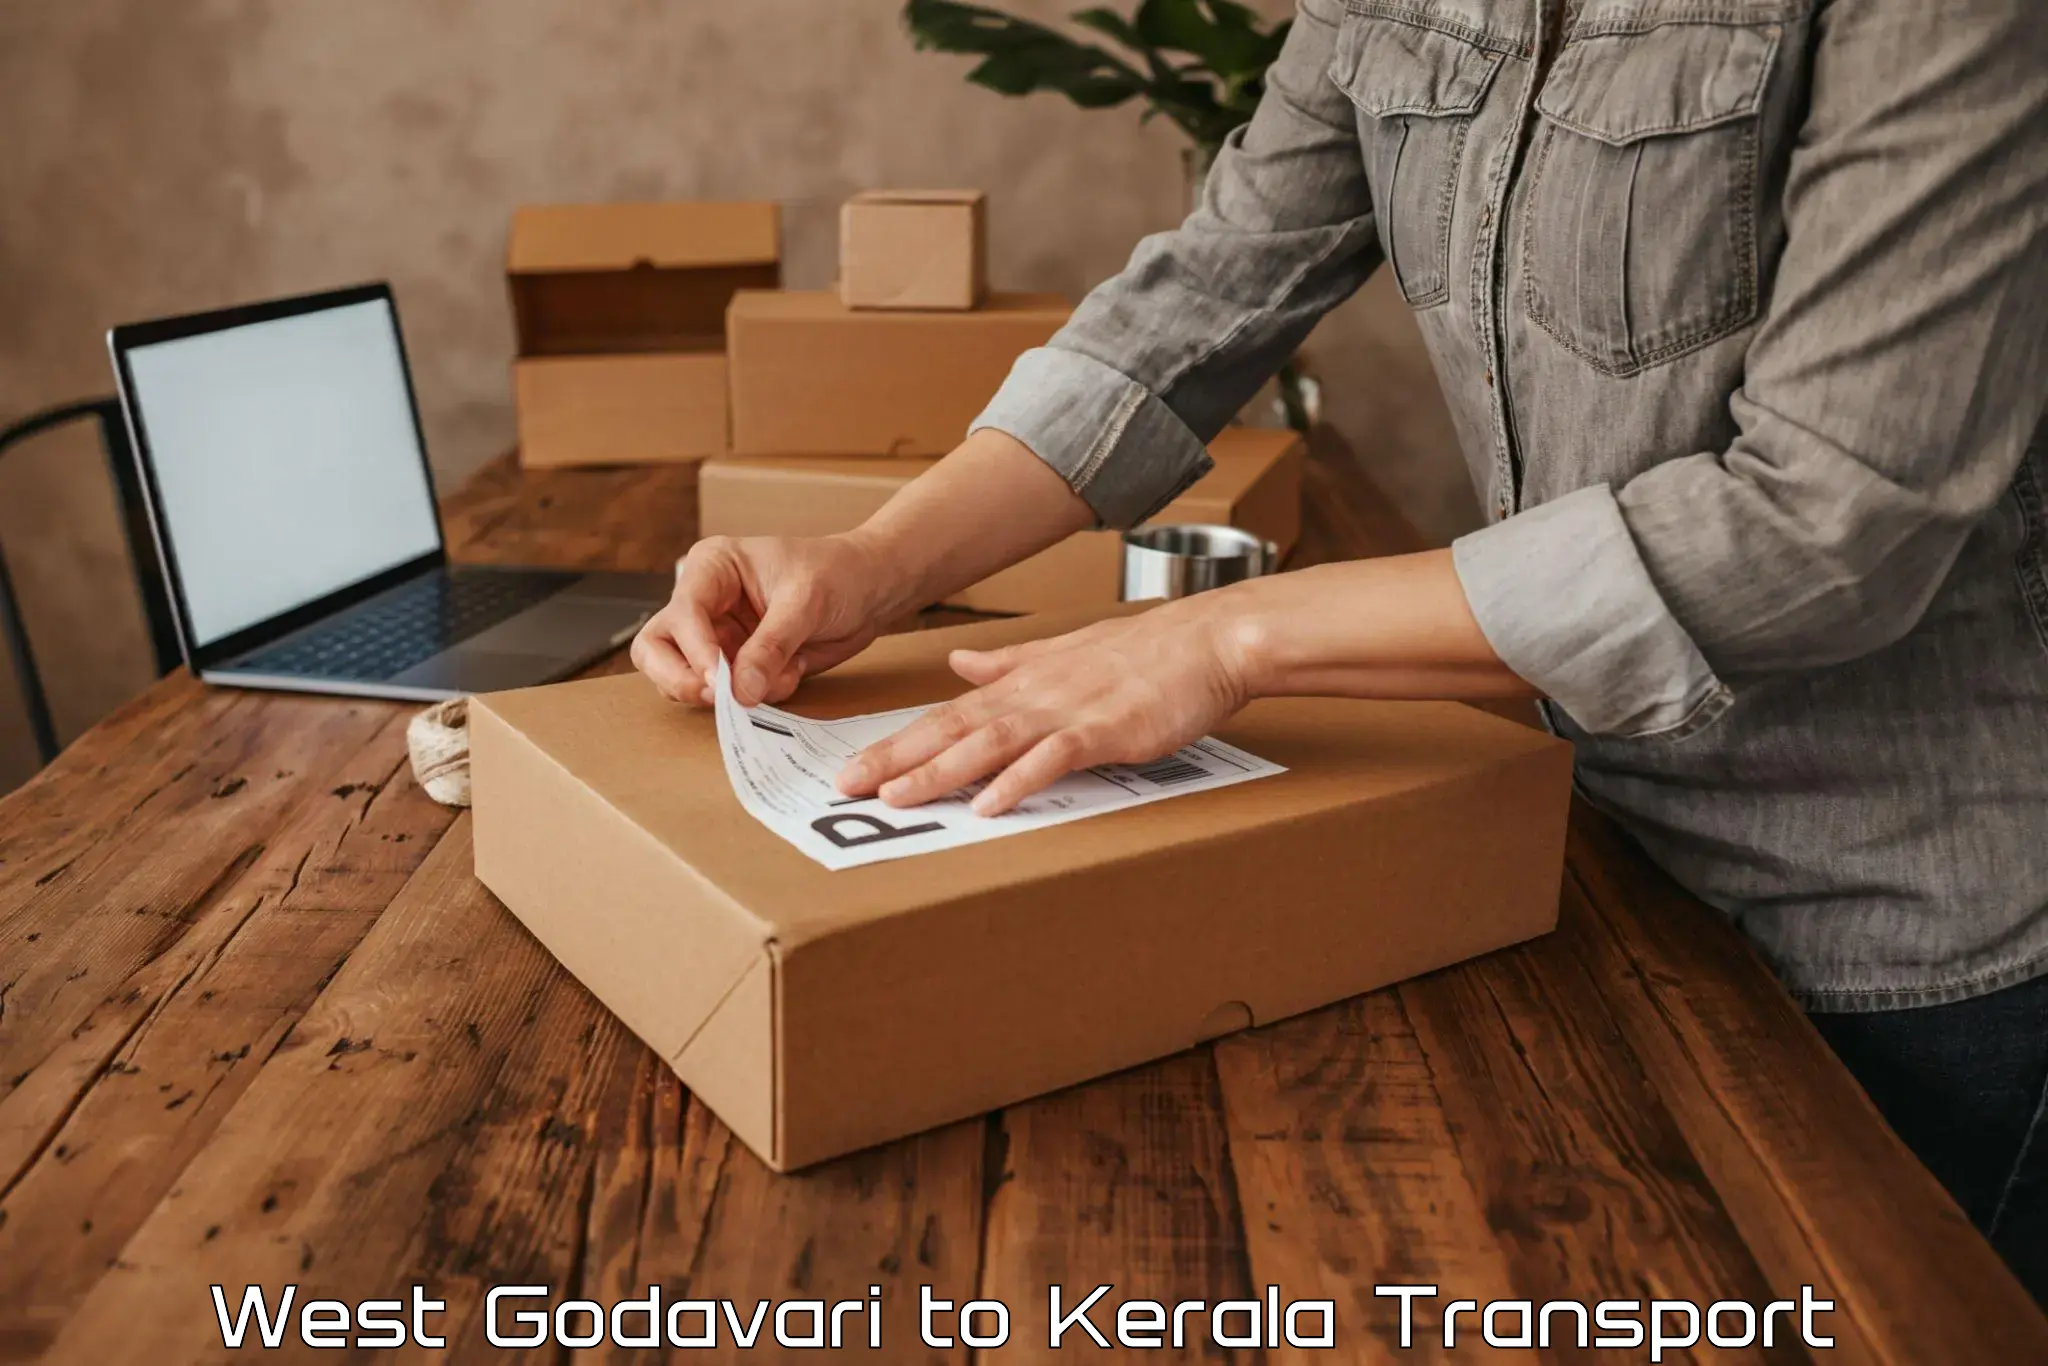 Online transport service West Godavari to Kanjirapally